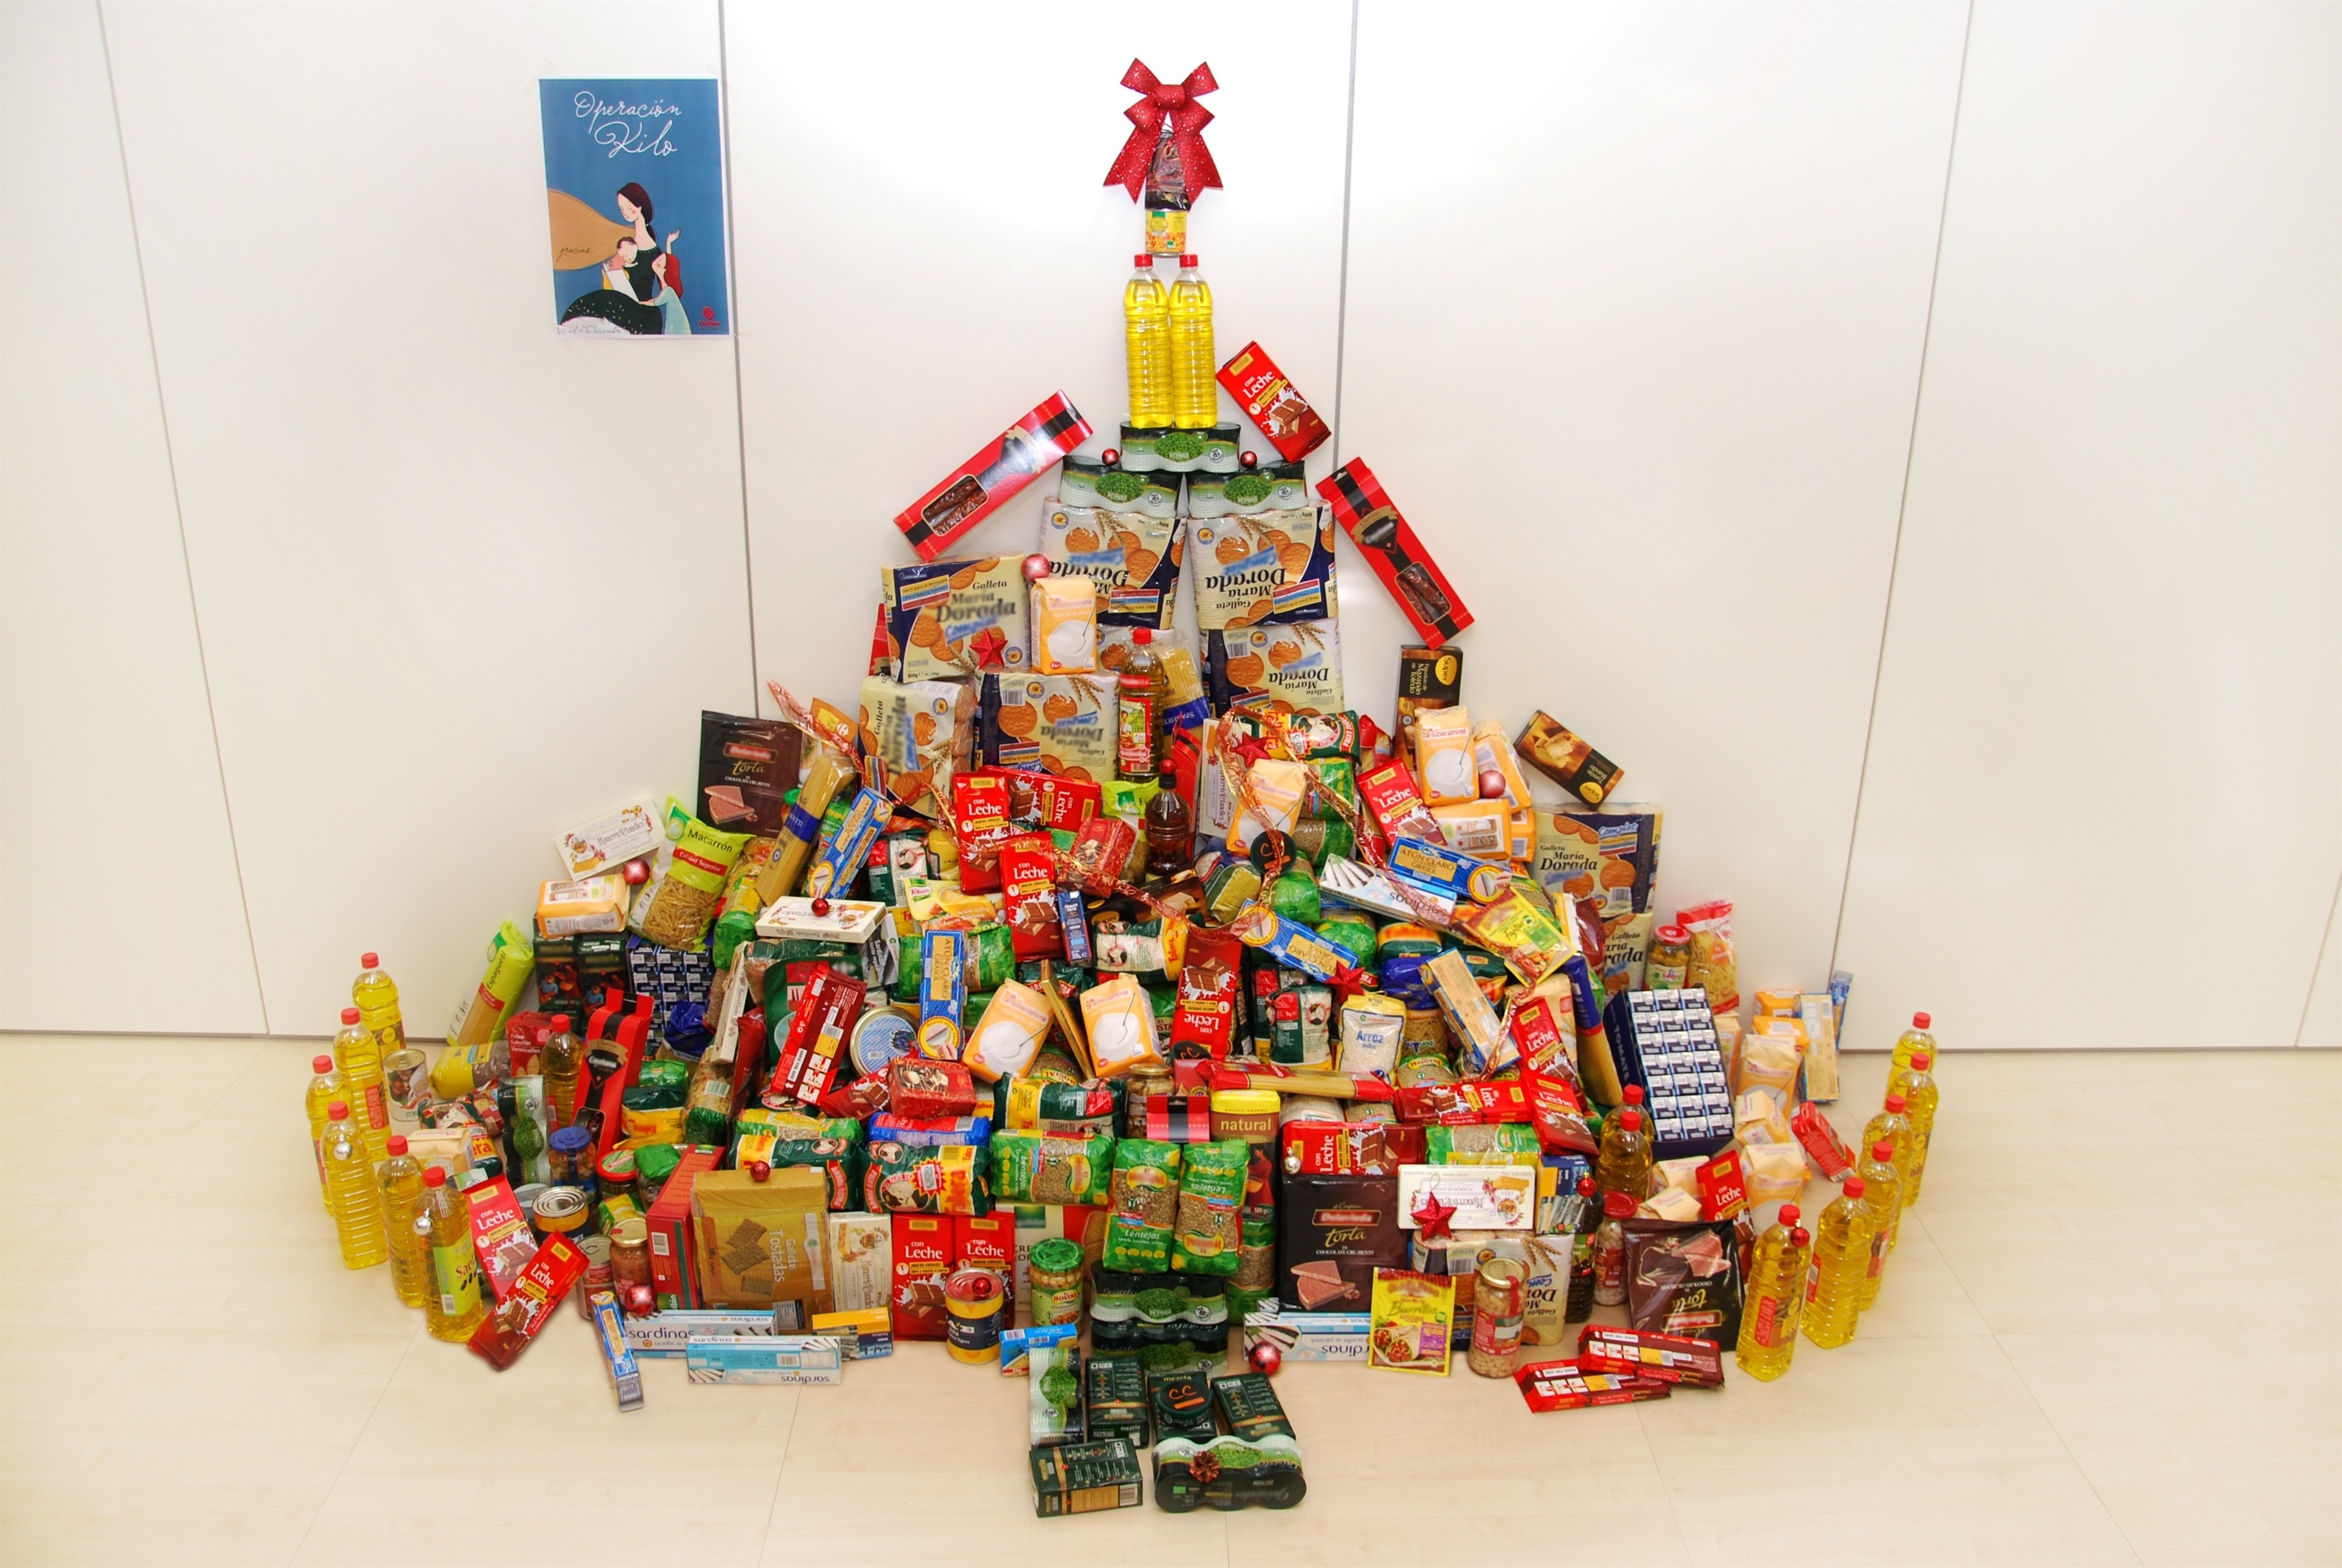 Una campaña recoge más de 100 kilos de alimentos que se distribuirán estas navidades